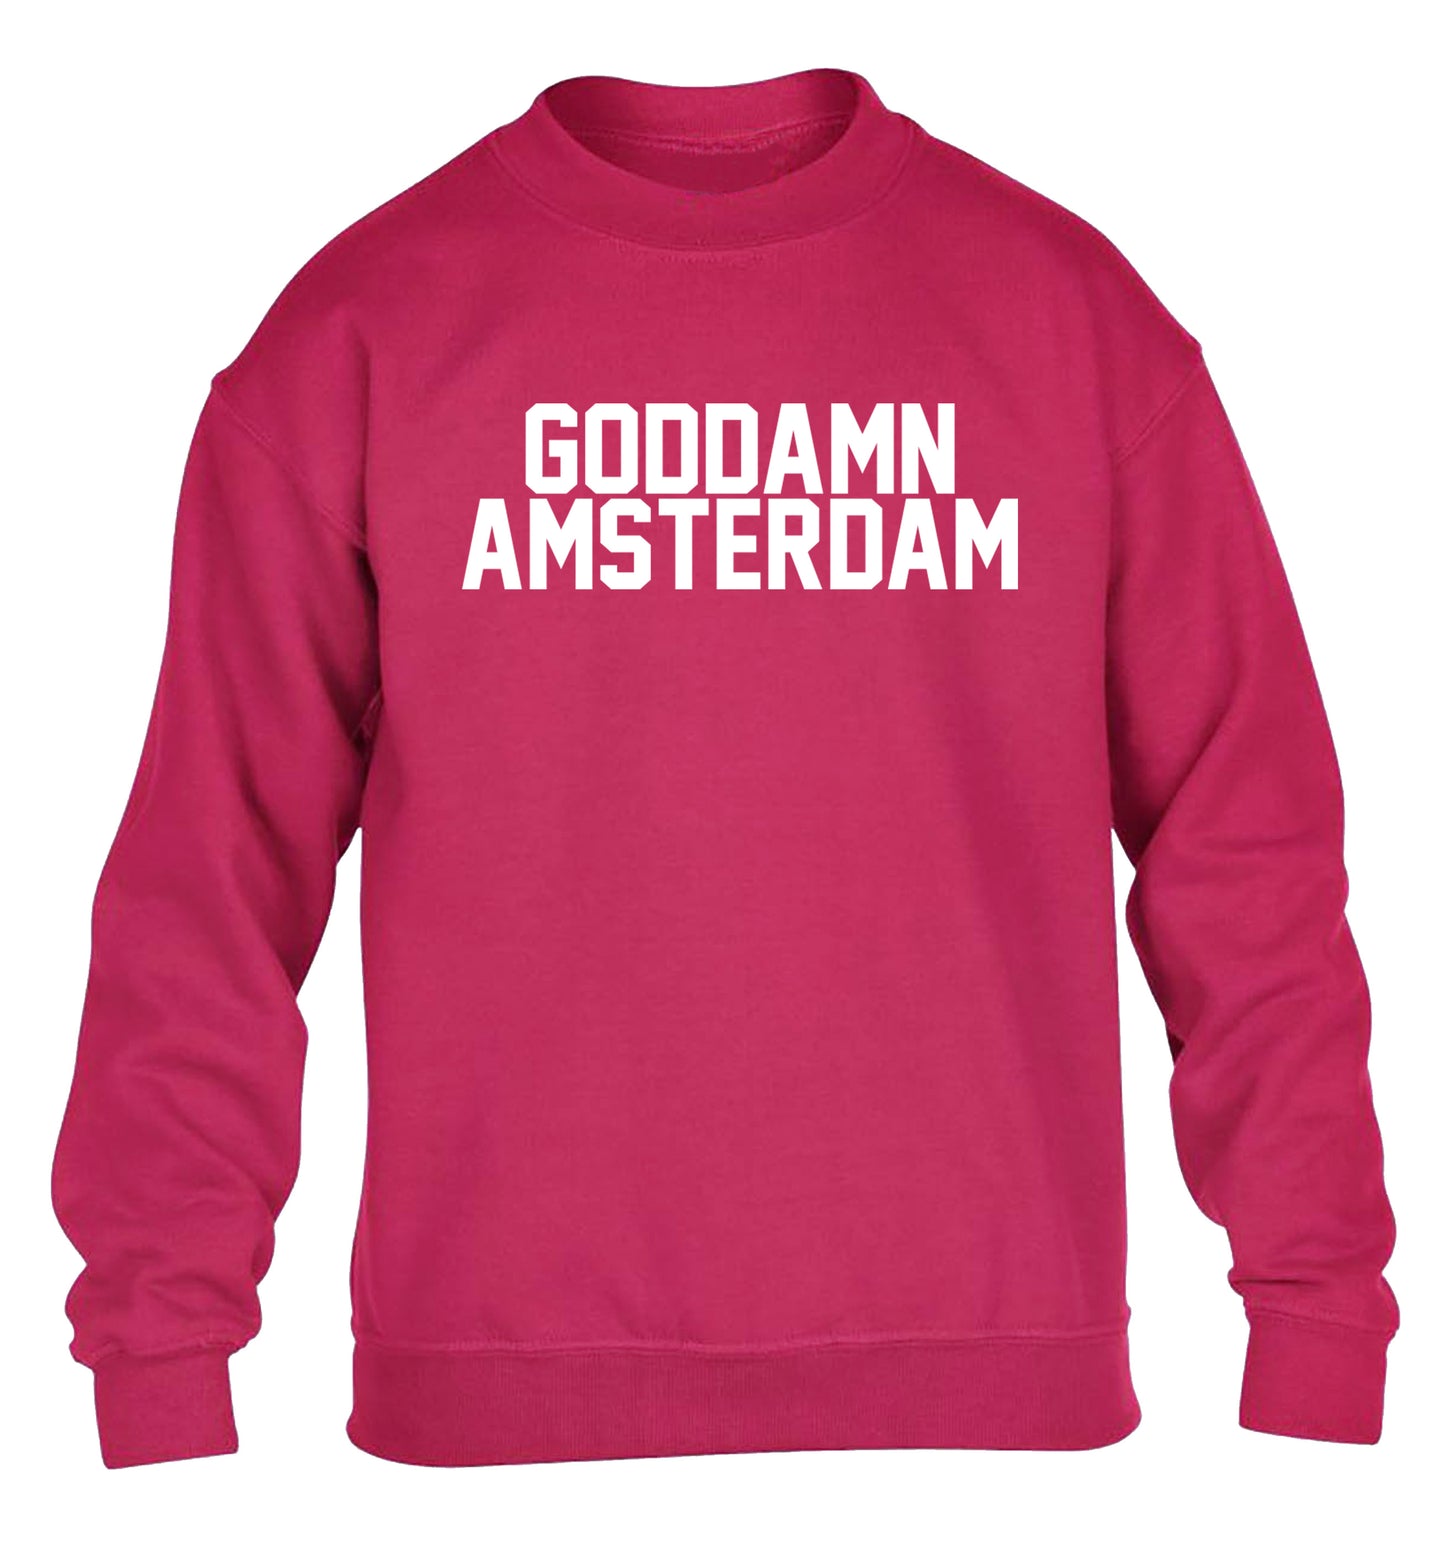 Goddamn Amsterdam children's pink sweater 12-13 Years